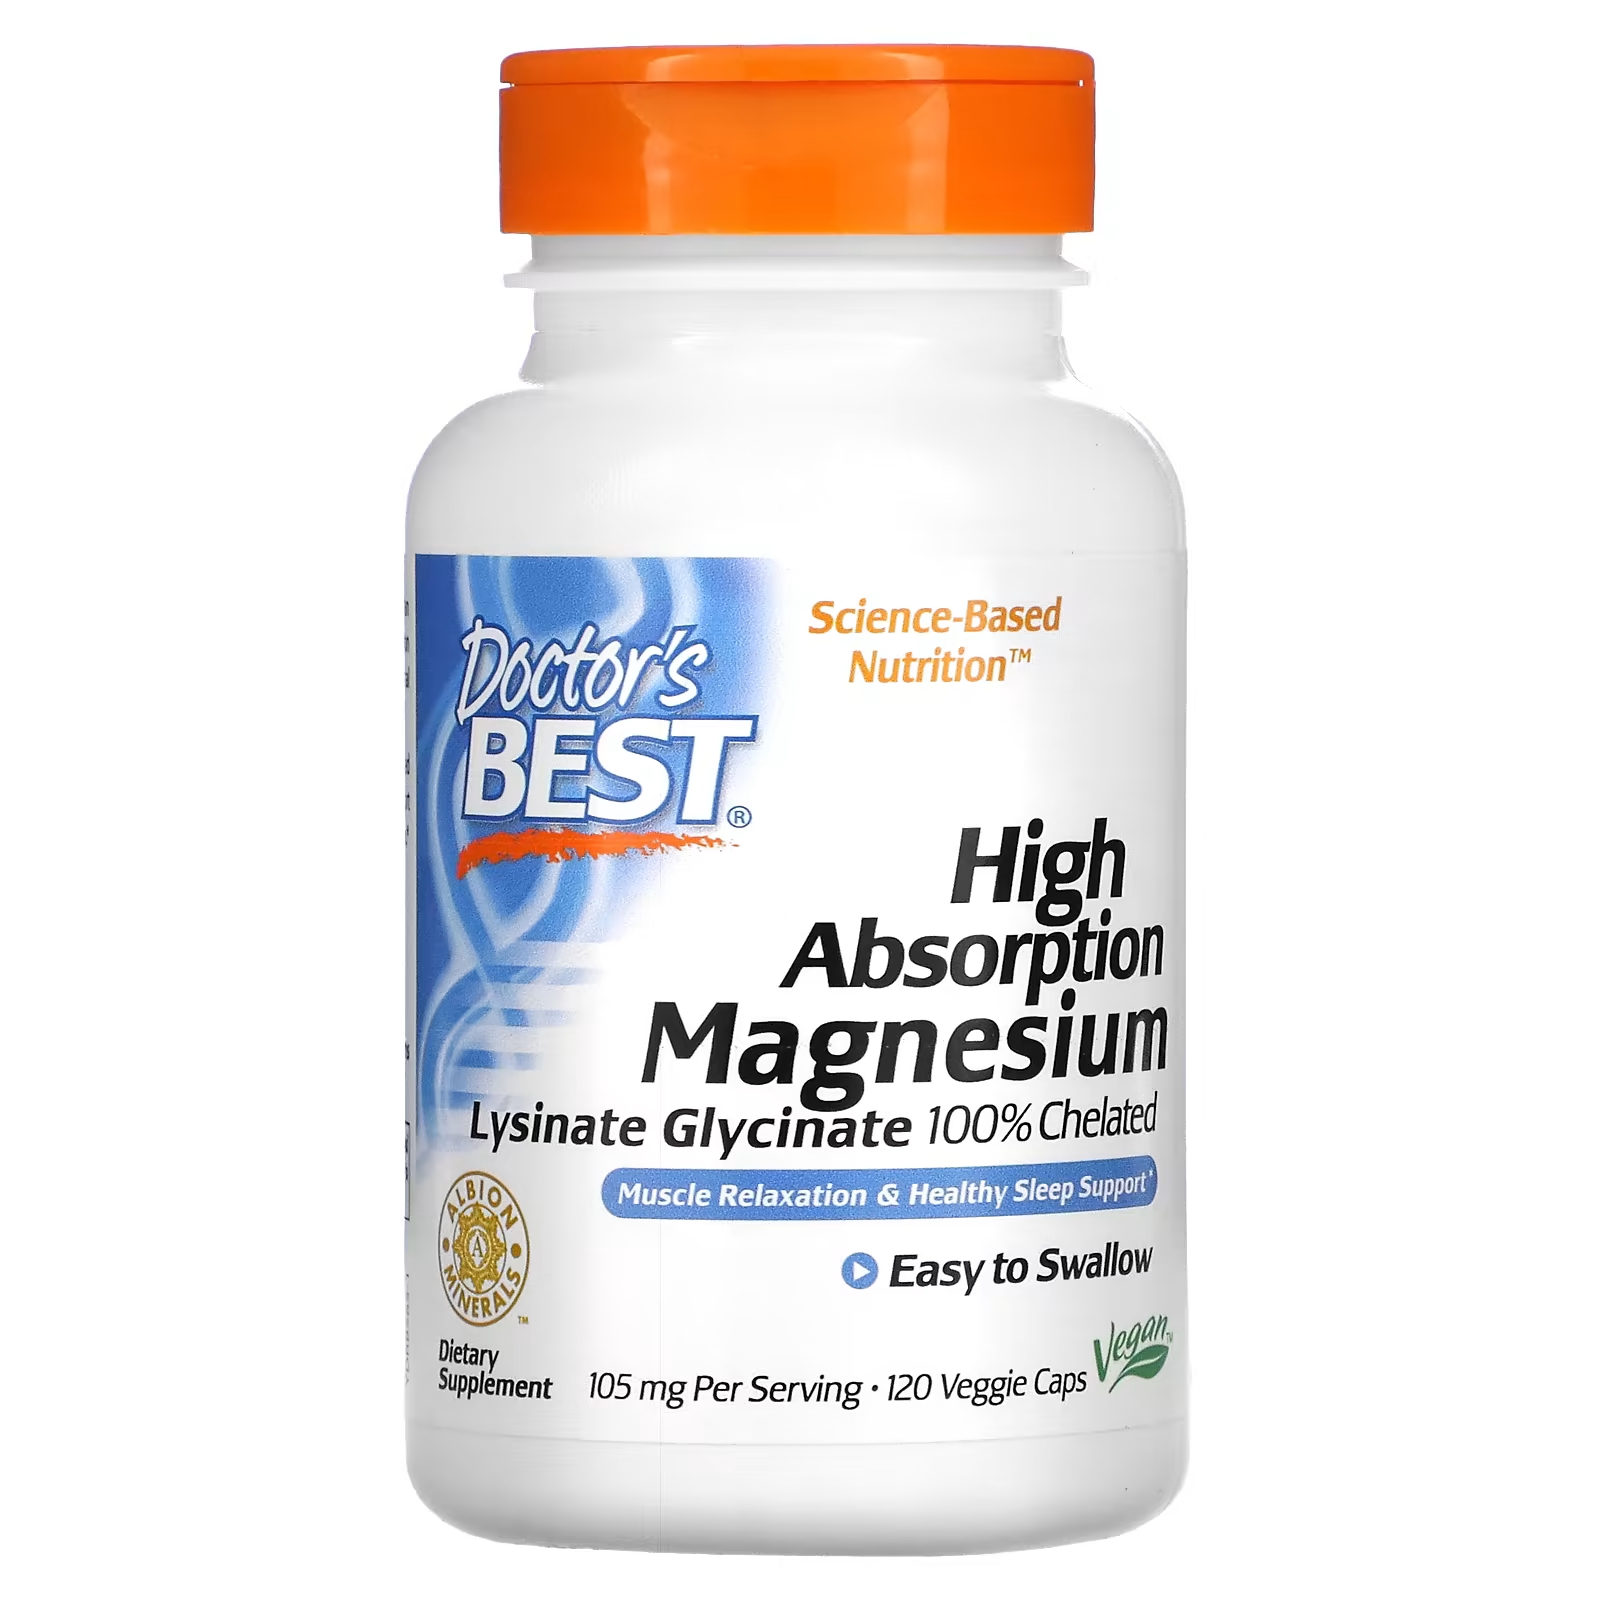 Doctor's Best Магний с высокой усвояемостью, 105 мг, 120 растительных капсул (52,5 мг на капсулу)